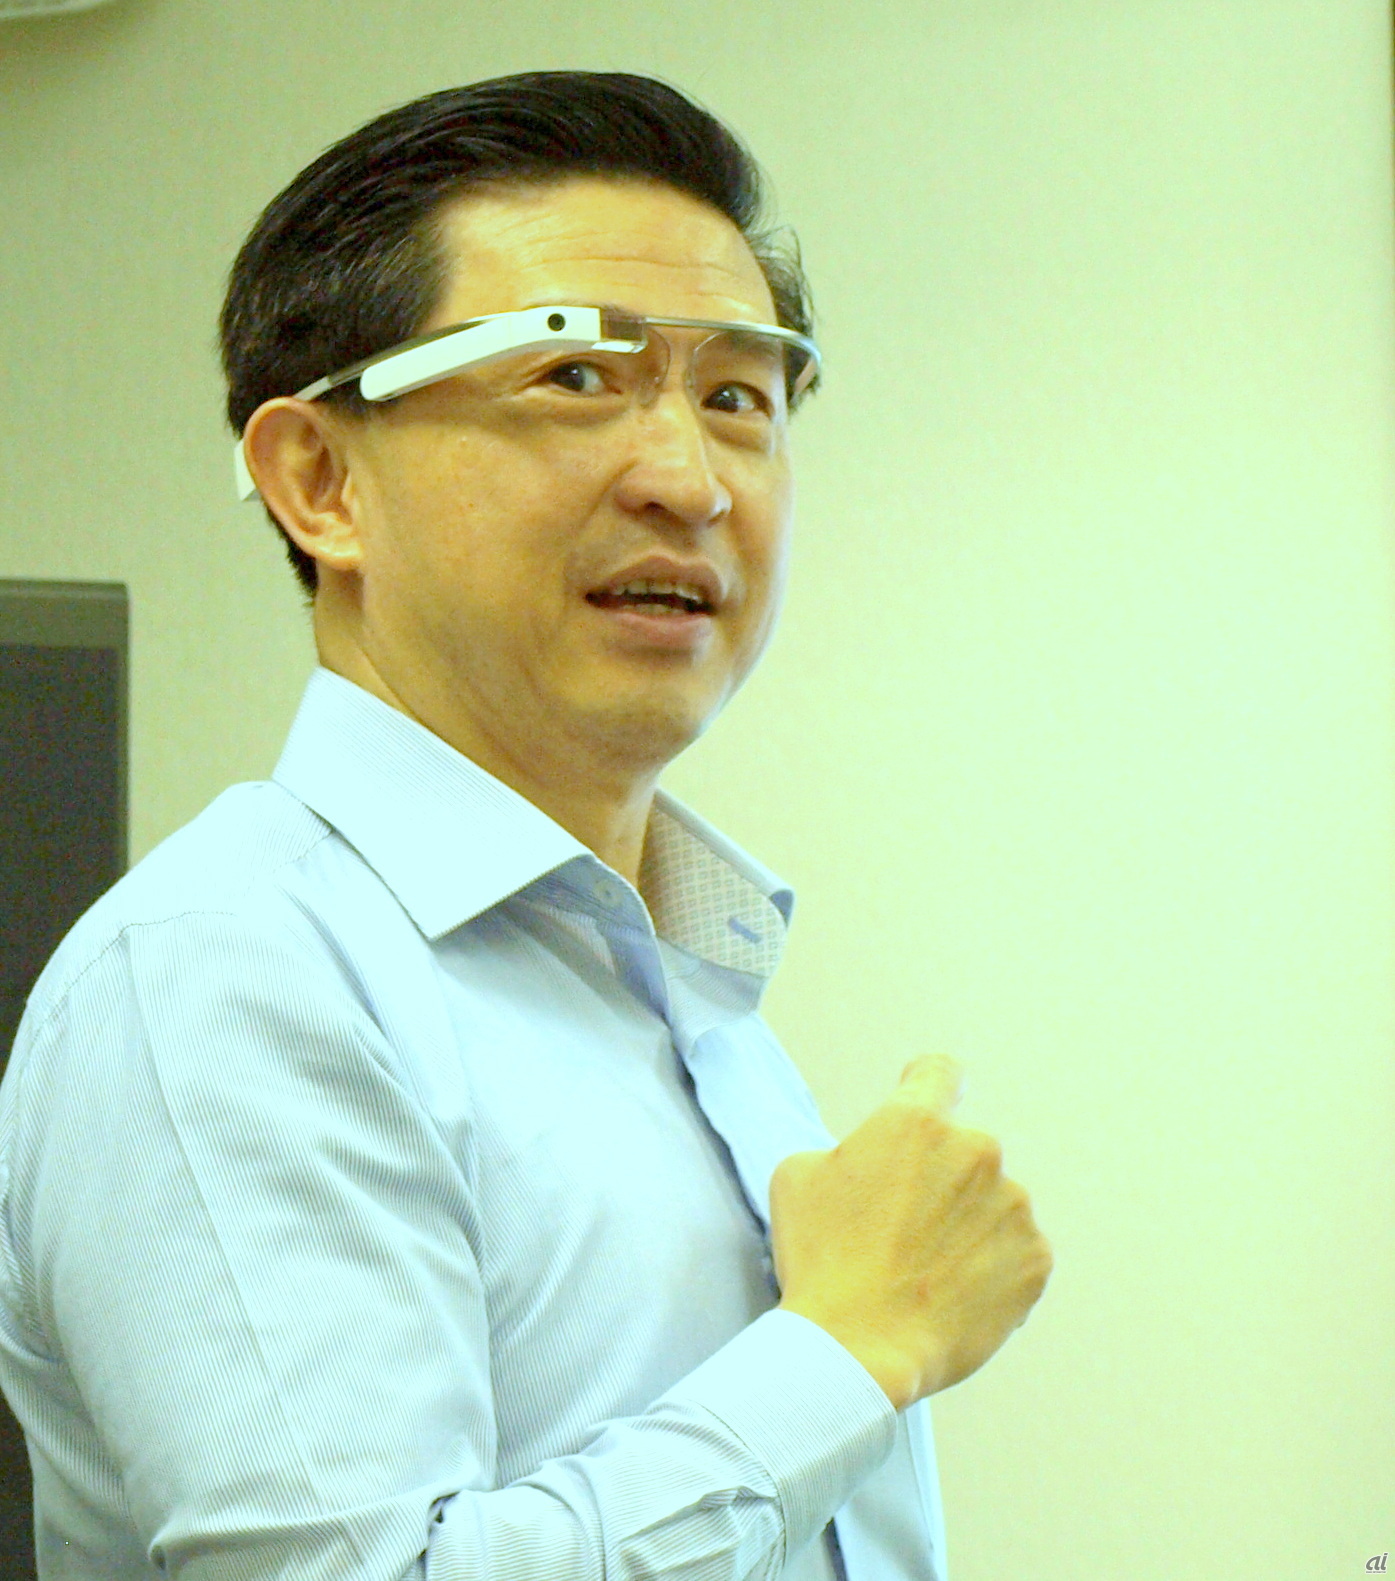 SGIのCTOを務めるGoh氏は「Google Glass」をかけていた